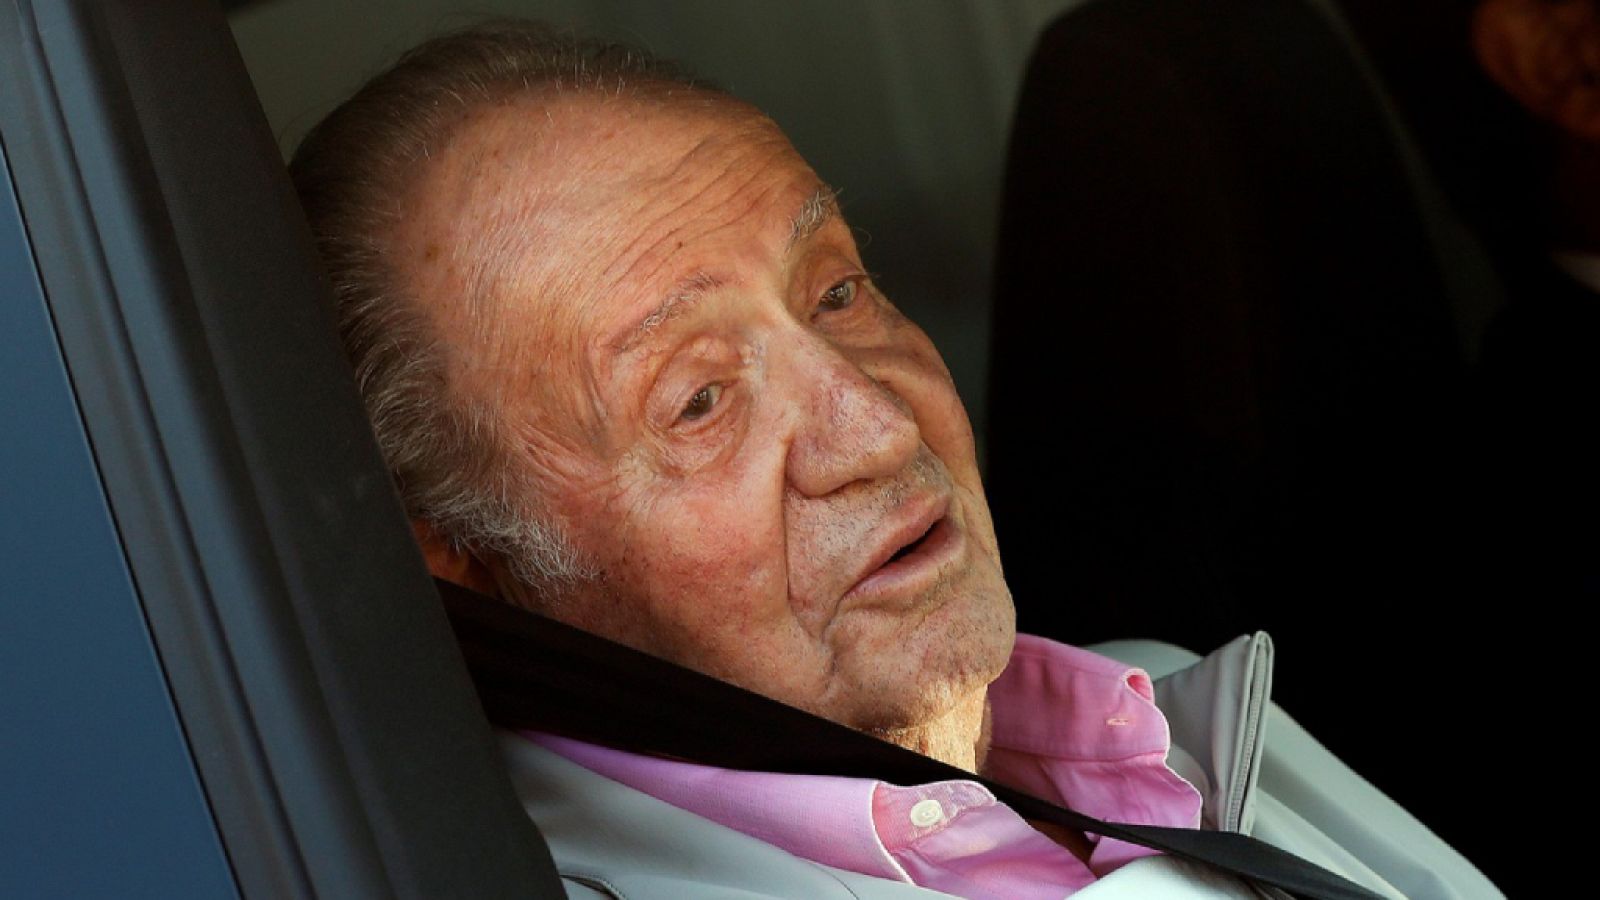 El rey Juan Carlos recibe el alta médica y sale del hospital - Escuchar ahora